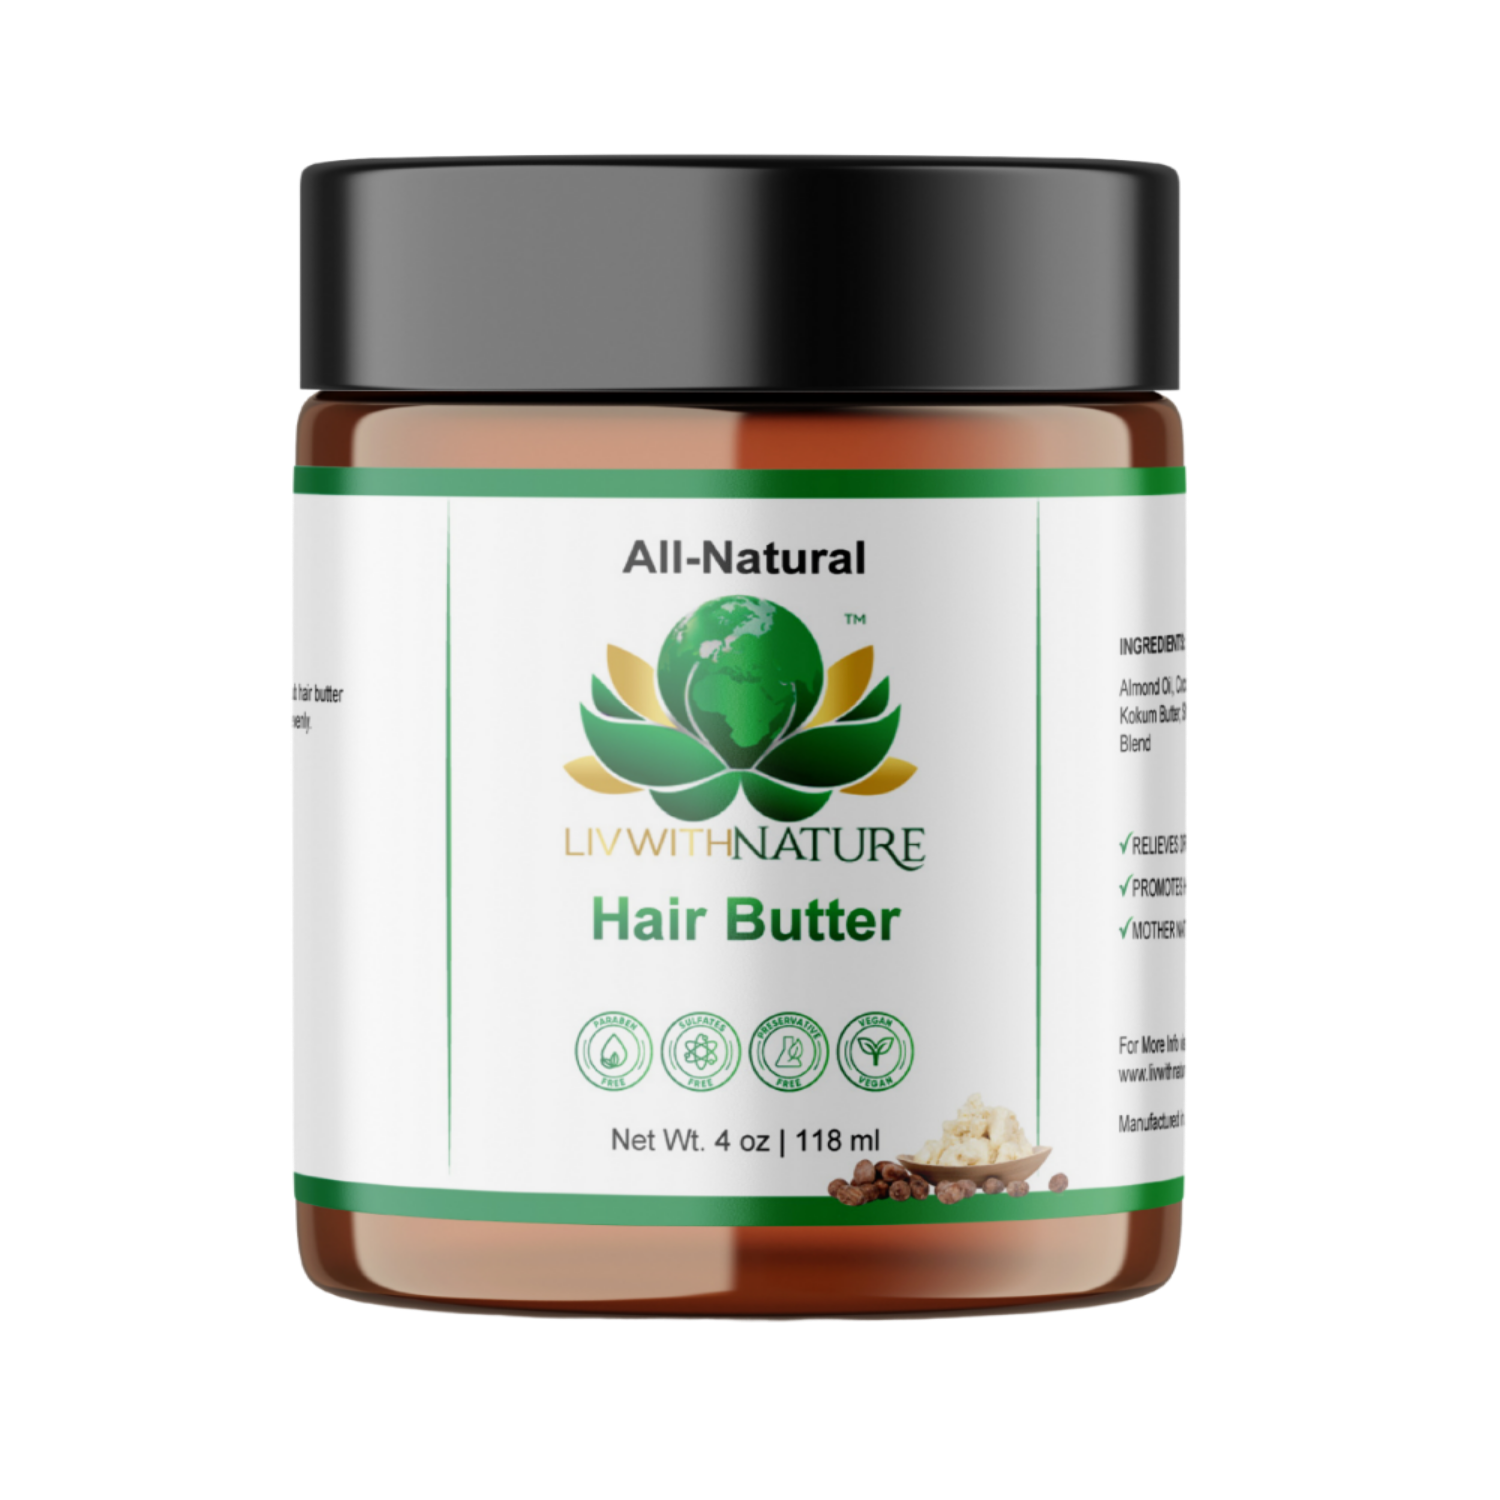 All-Natural Hair Butter